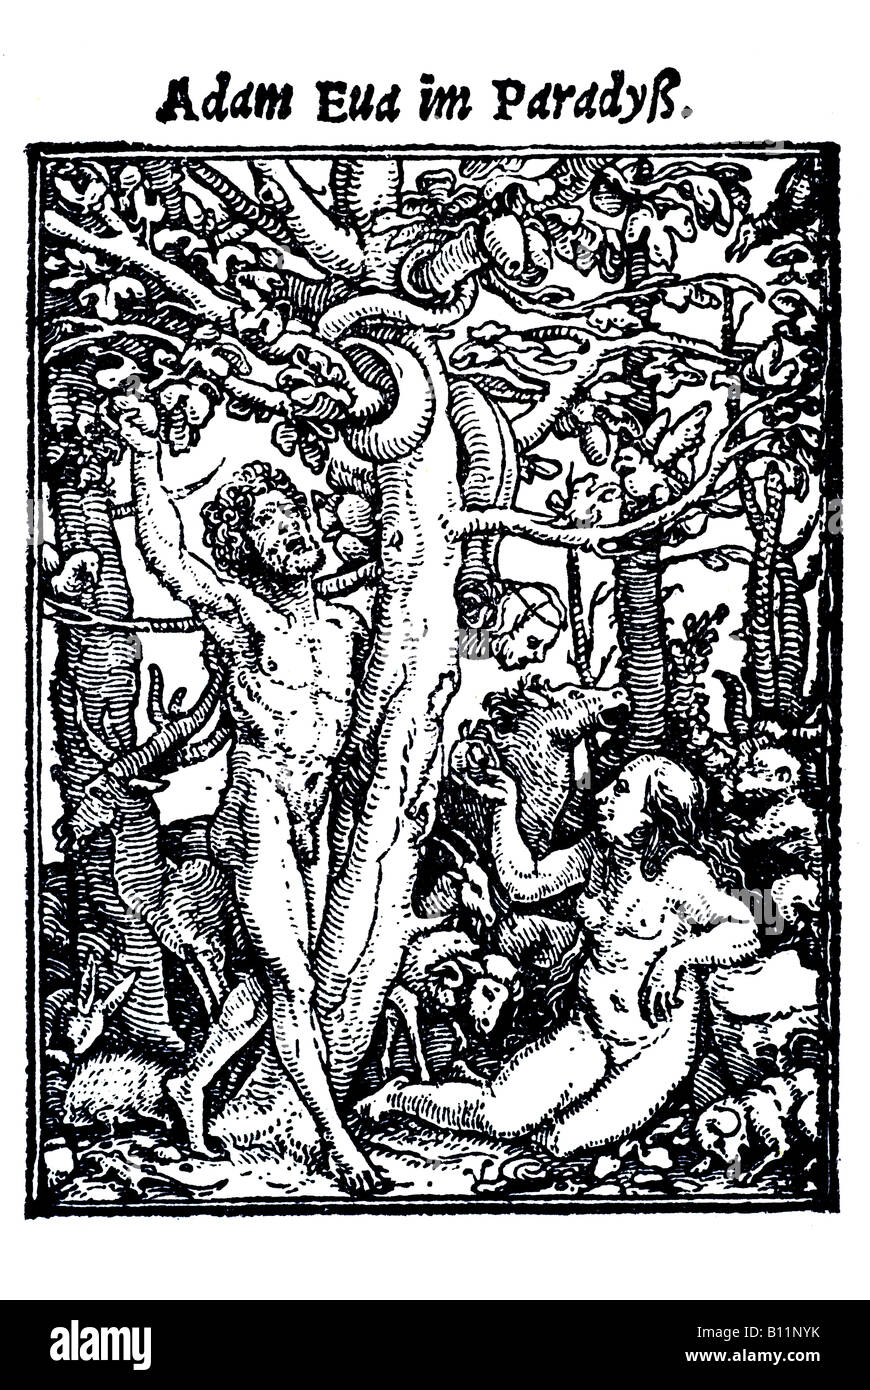 Adam et Eve au paradis, Hans Holbein le Jeune, Danse Macabre, 1538, Allemagne Banque D'Images